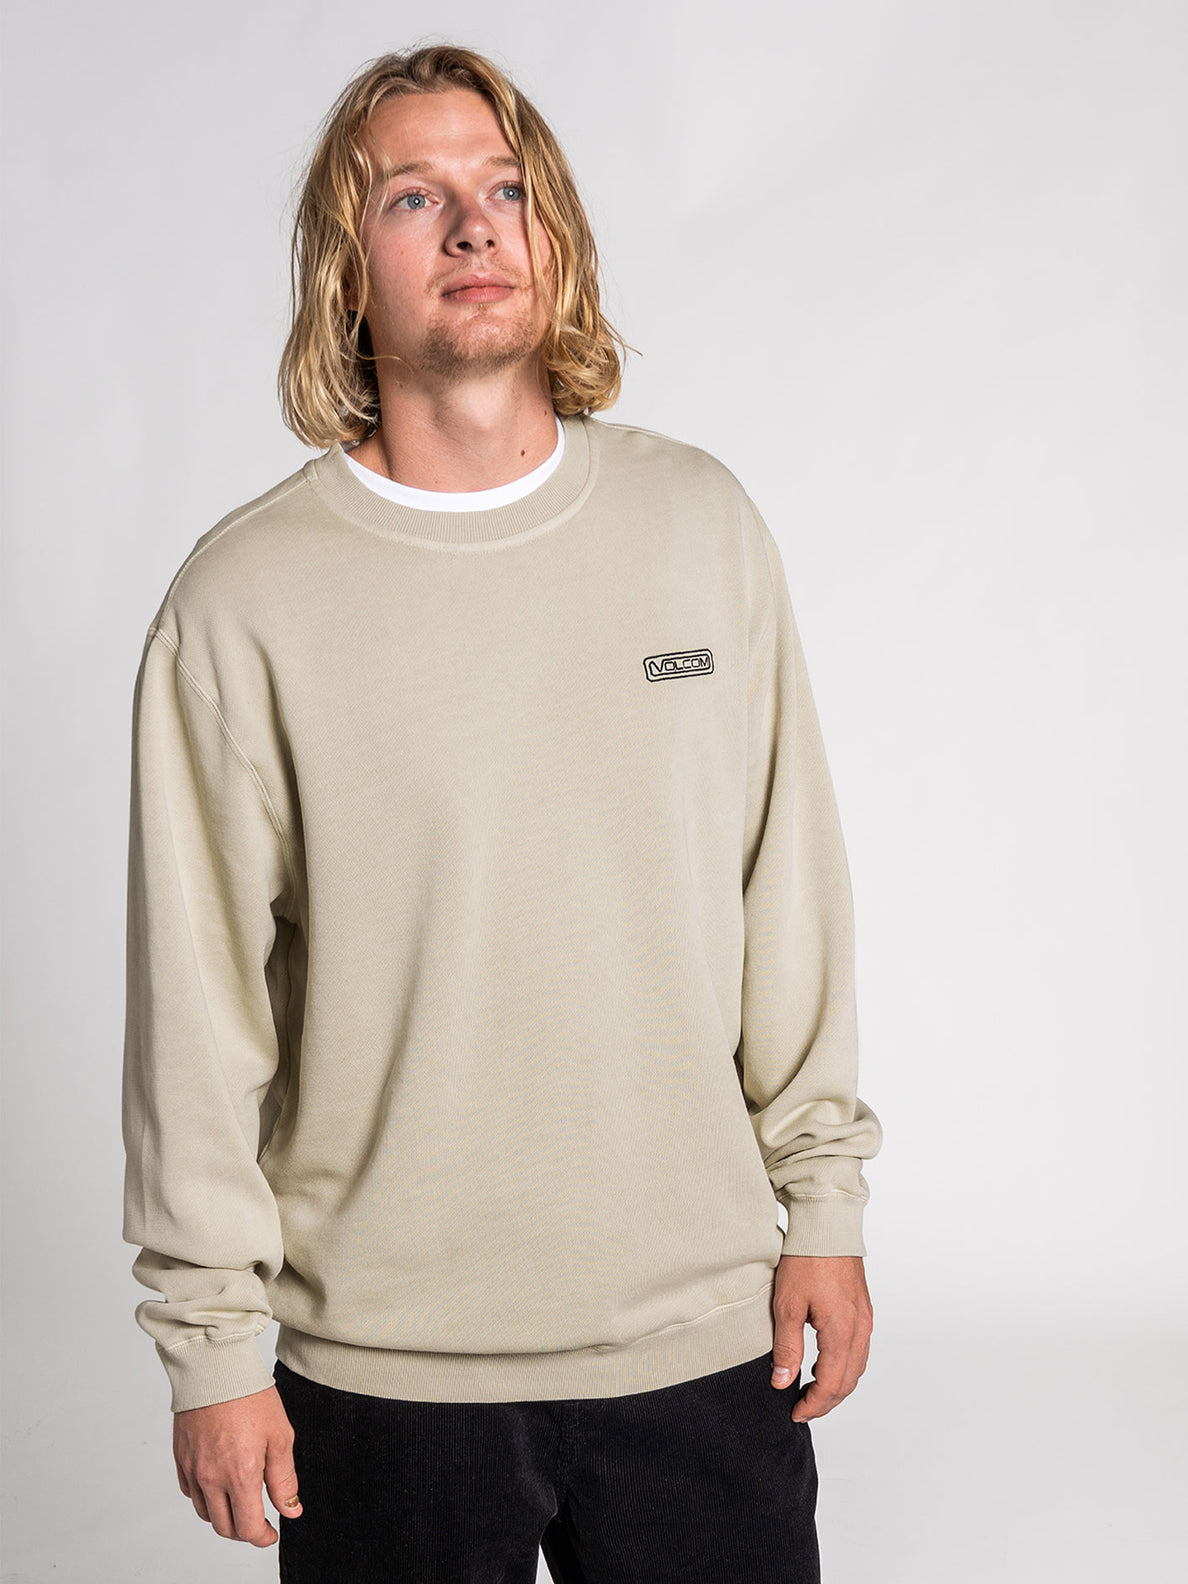 Backwall Sweatshirt - WHITECAP GREY